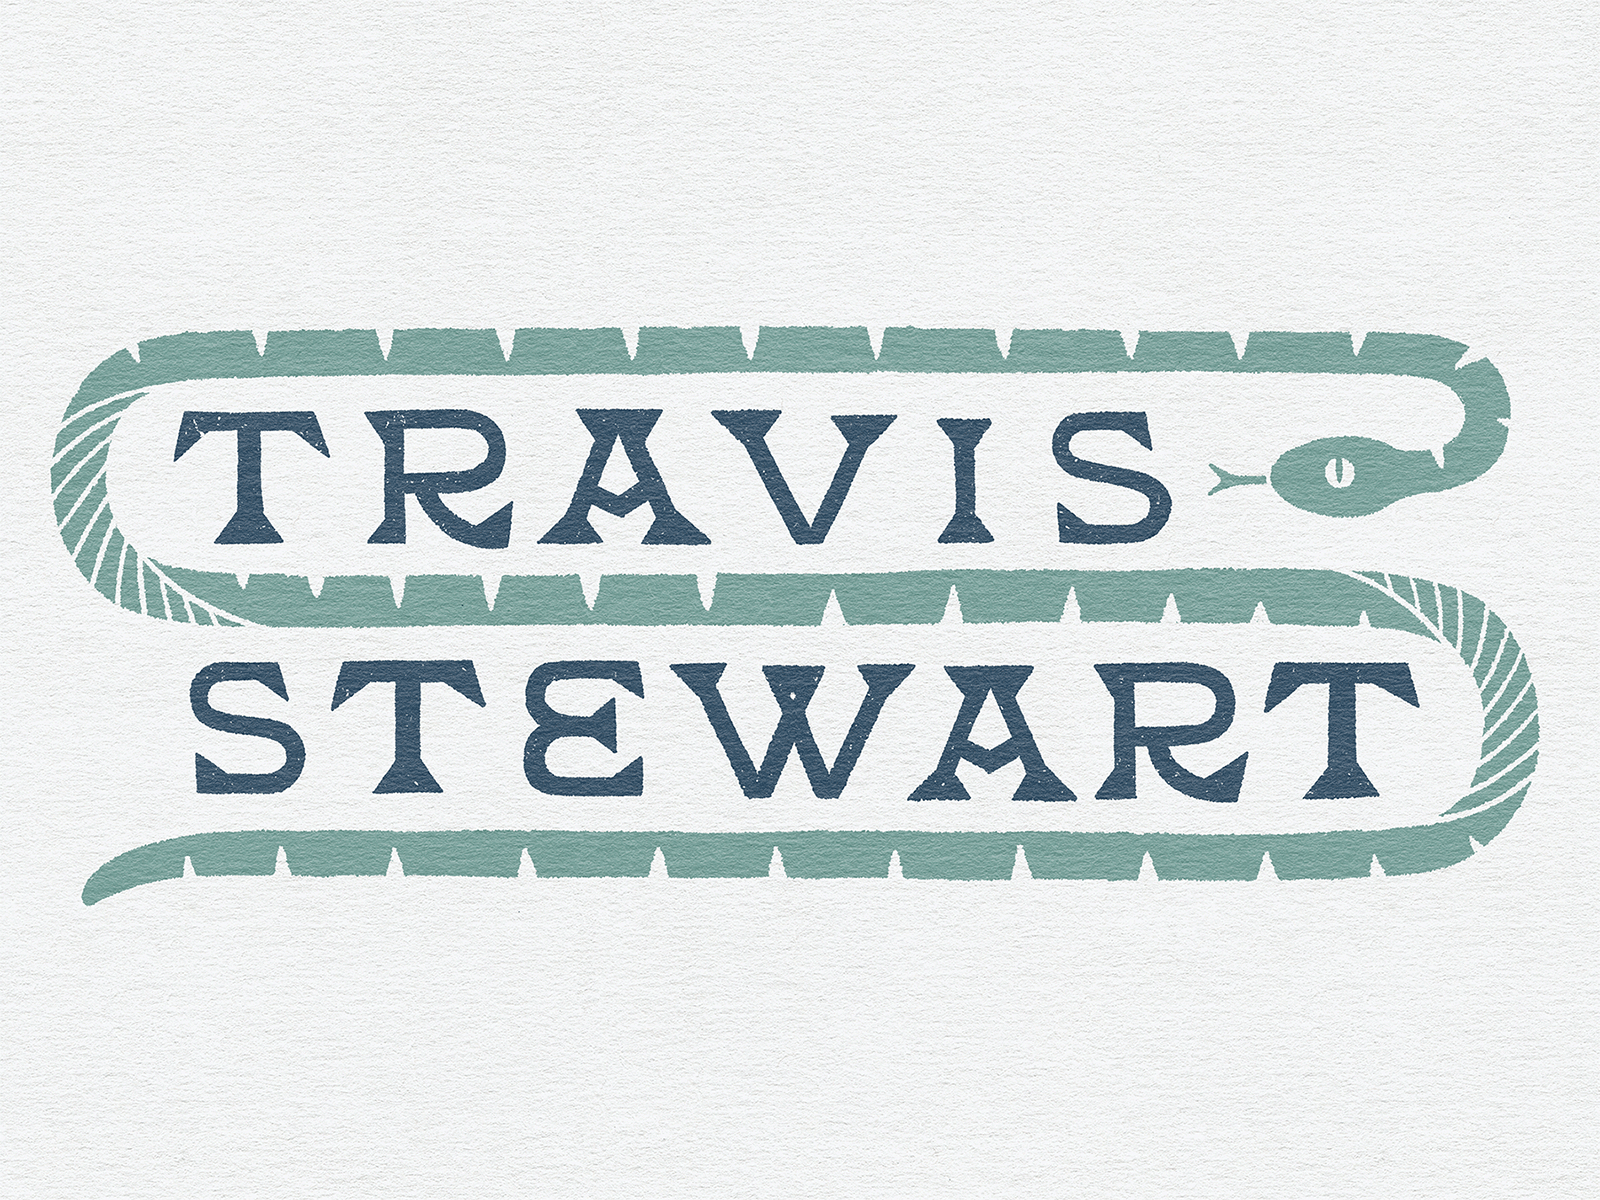 Travis Stewart